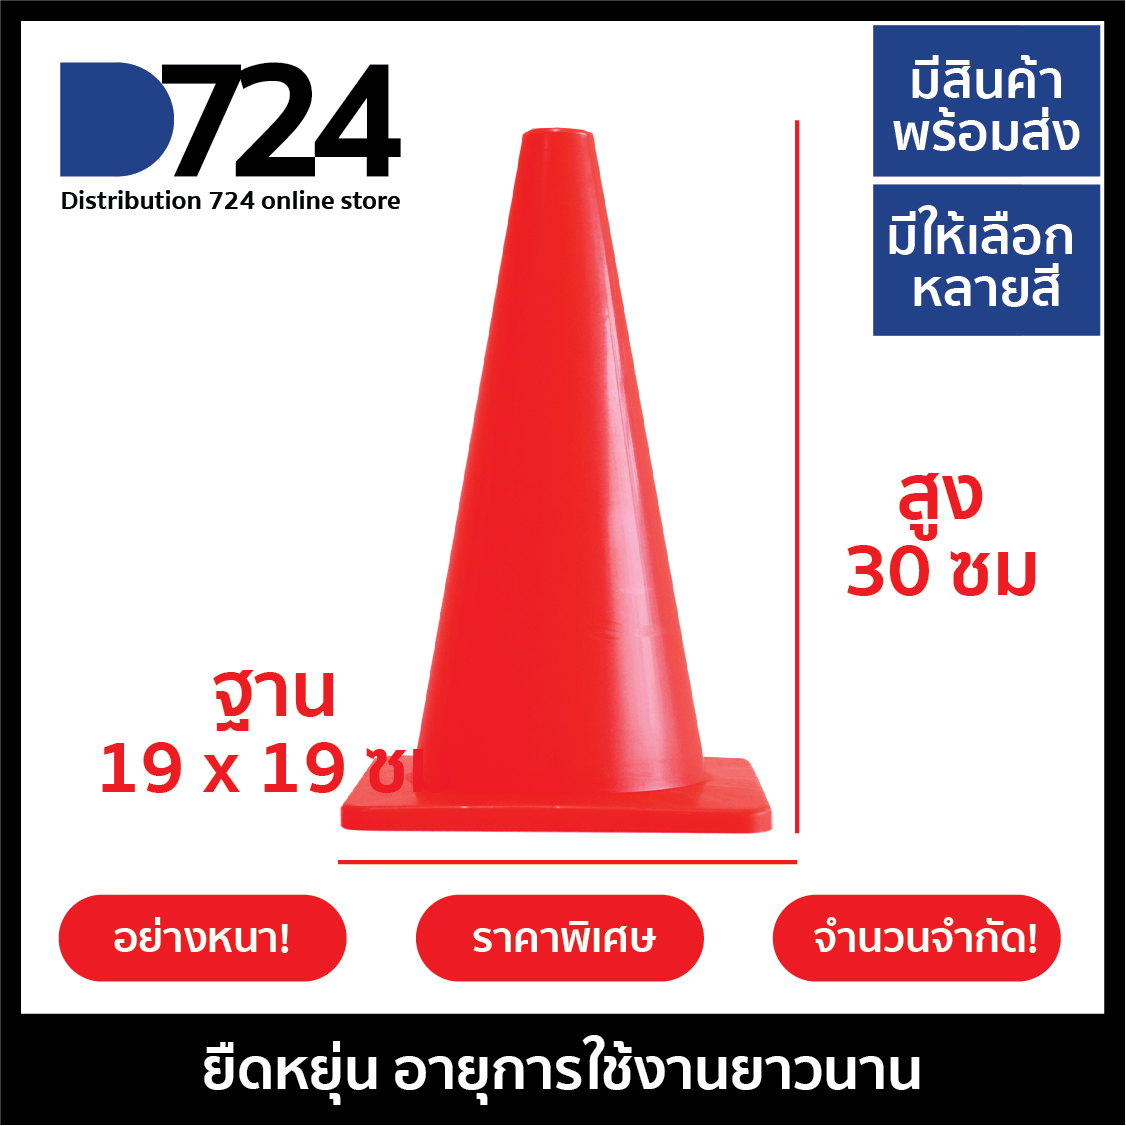 กรวย กรวยฝึกซ้อมกีฬา กรวยจราจร กรวยยาง สูง 30 ซม 12 นิ้ว อย่างดี อย่างหนา ราคาพิเศษ สีแดง / Training cone Agility cone Traffic cone 30 cm 12 Inch Red